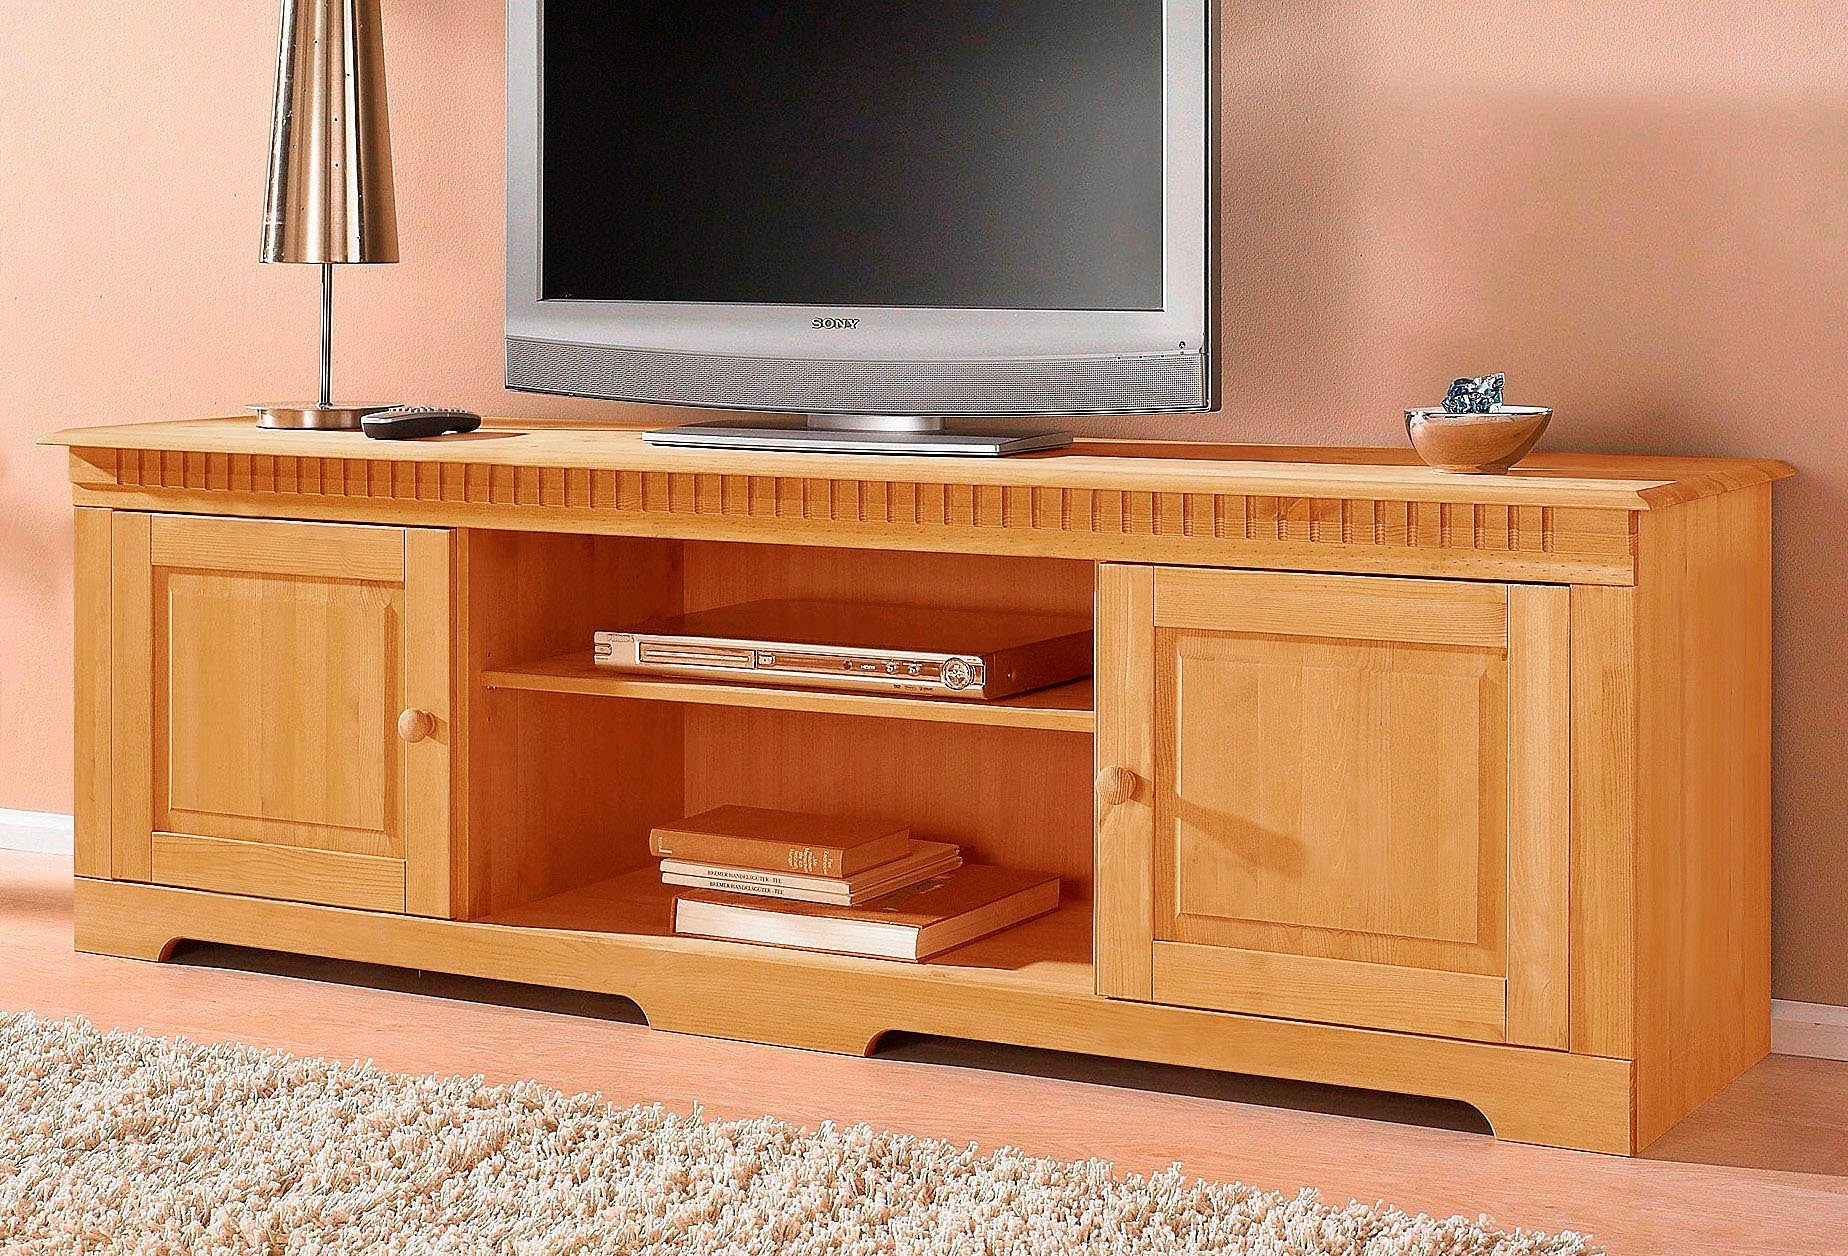 home affaire tv-meubel lisa van mooi massief grenenhout, breedte 175 cm beige